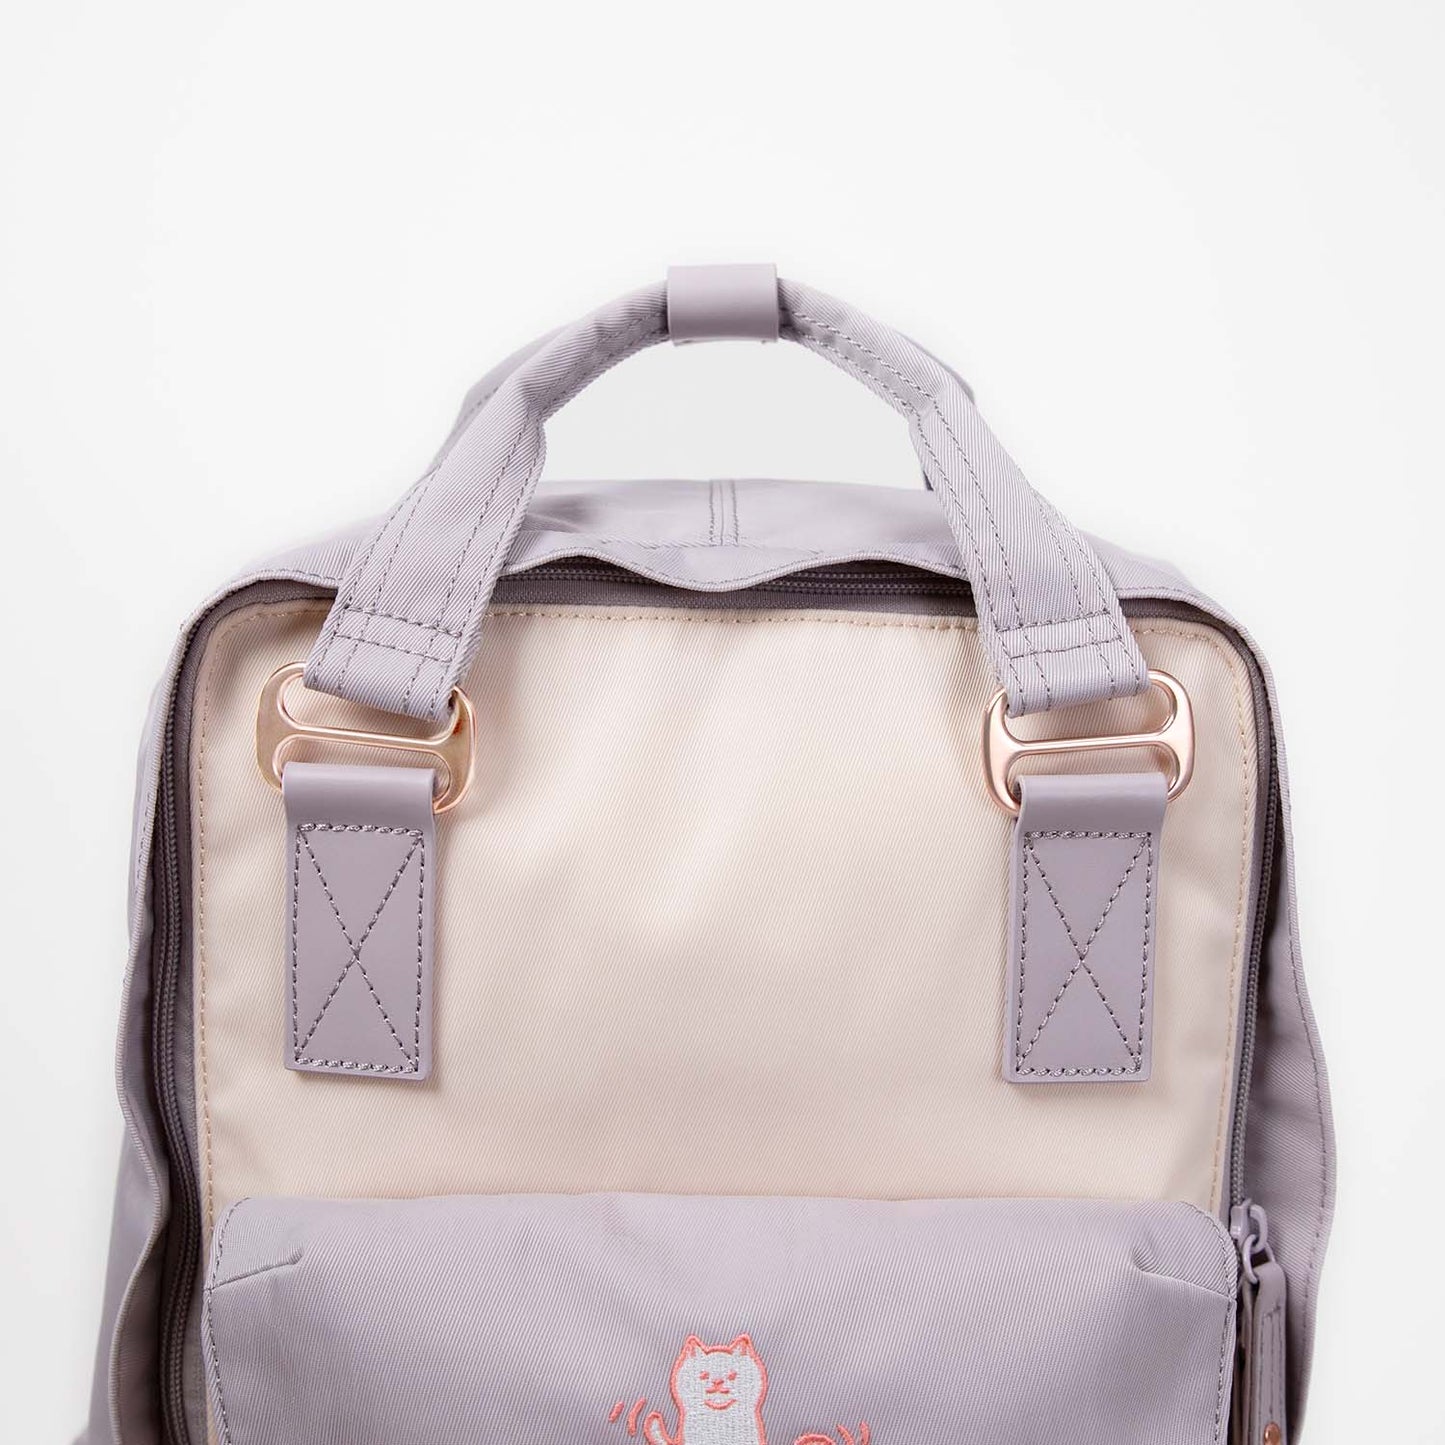 Macaroon Fairies & Friends Series Backpack